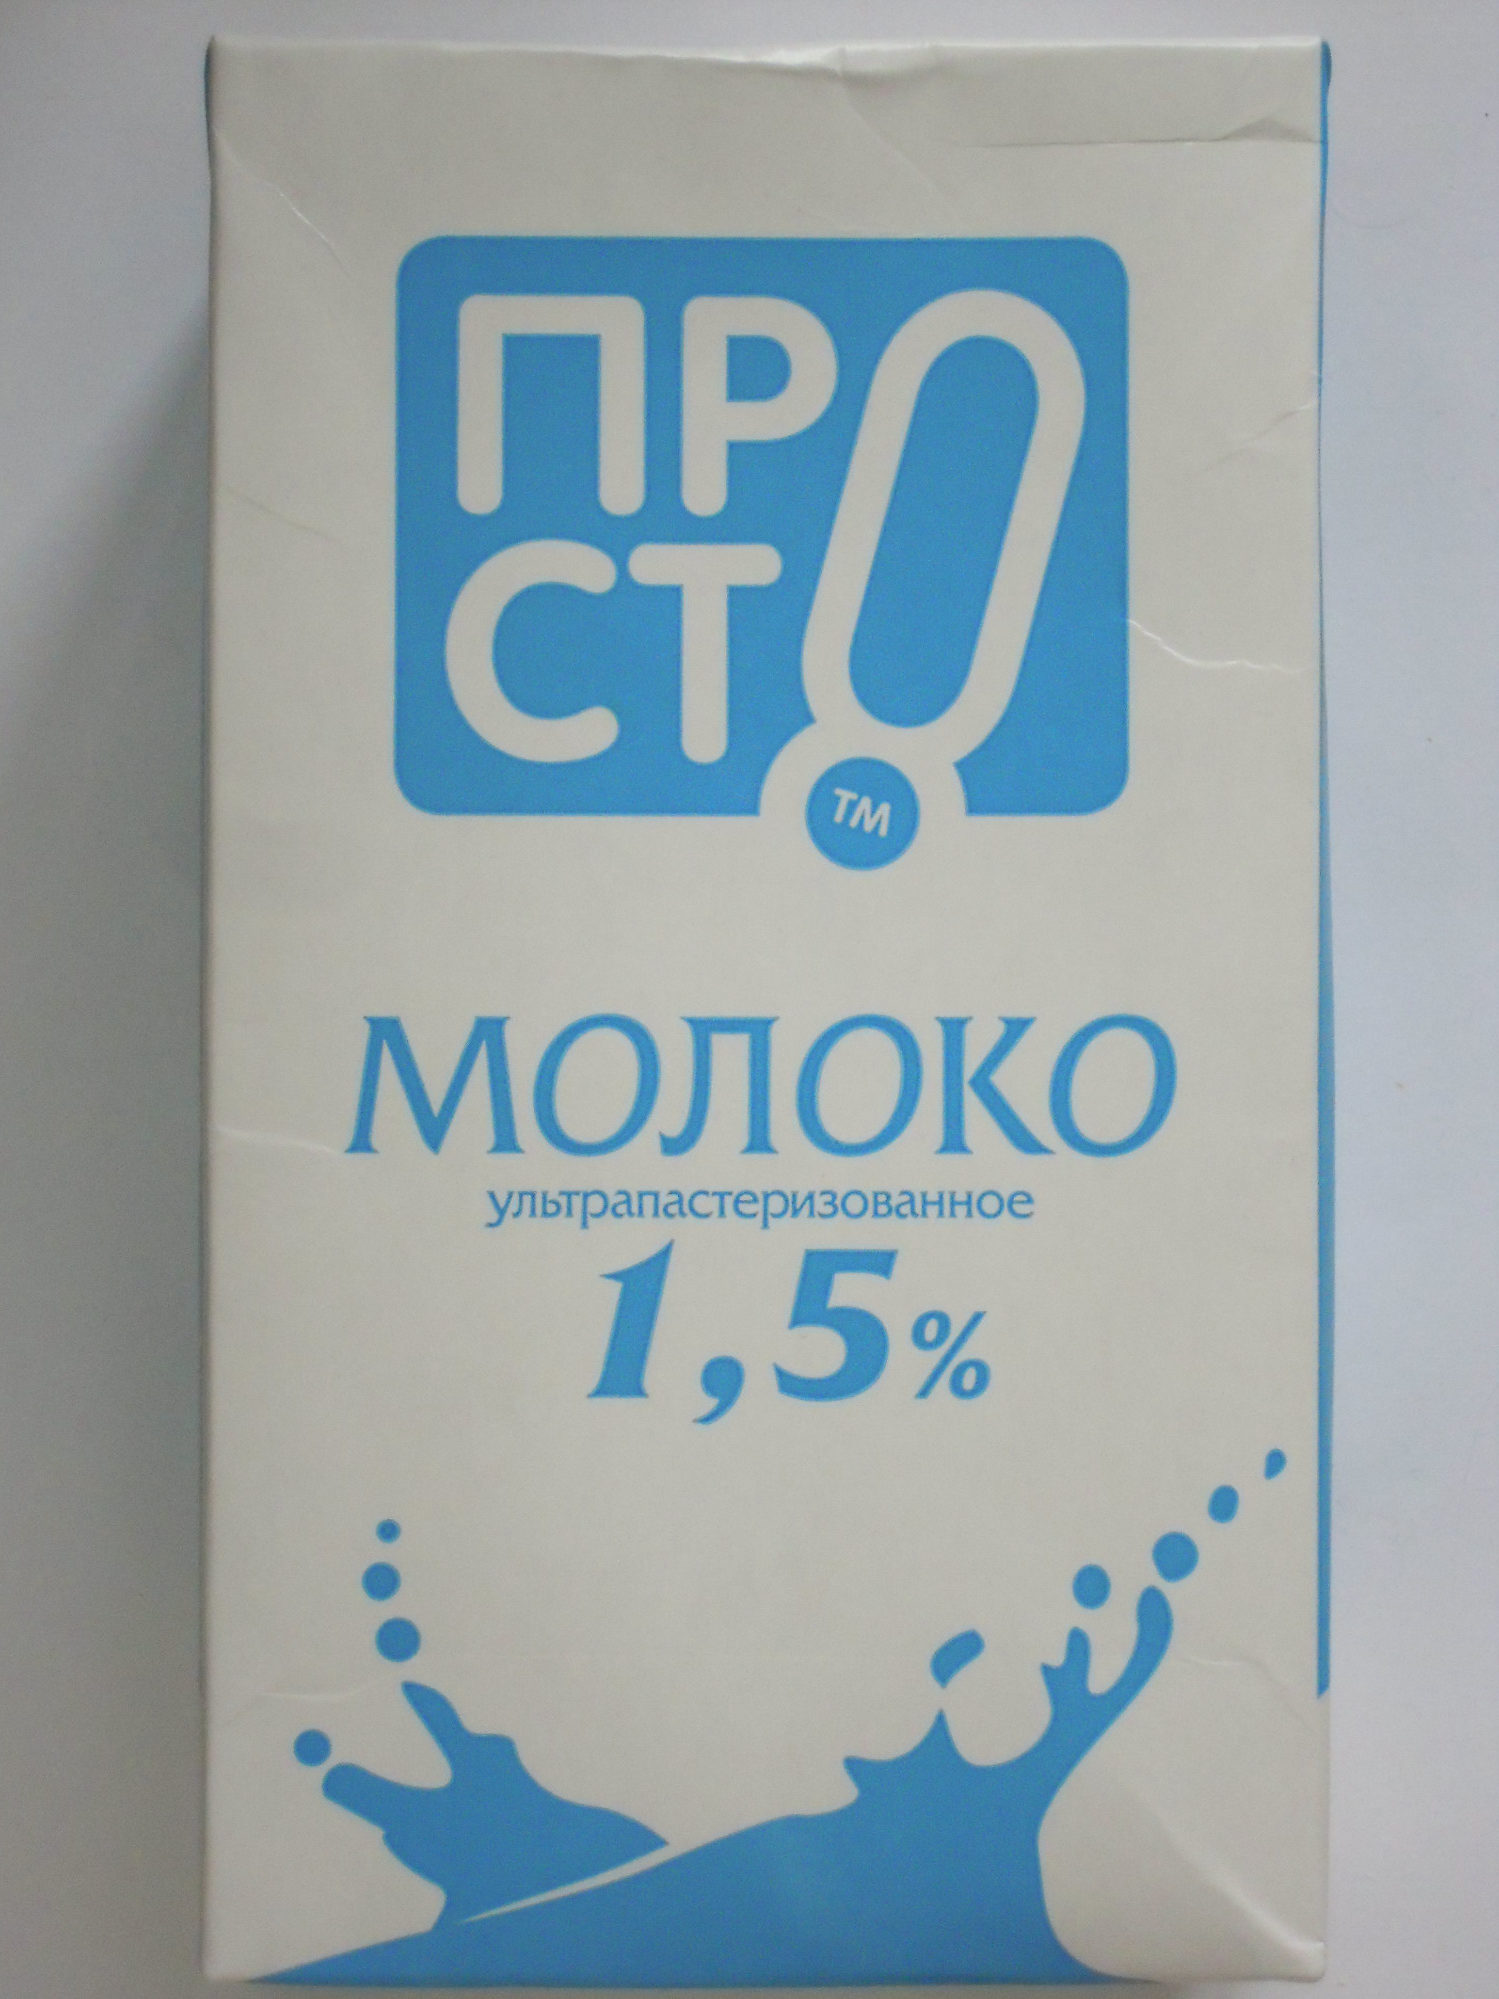 Молоко ультрапастеризованное 1,5 % - Product - ru